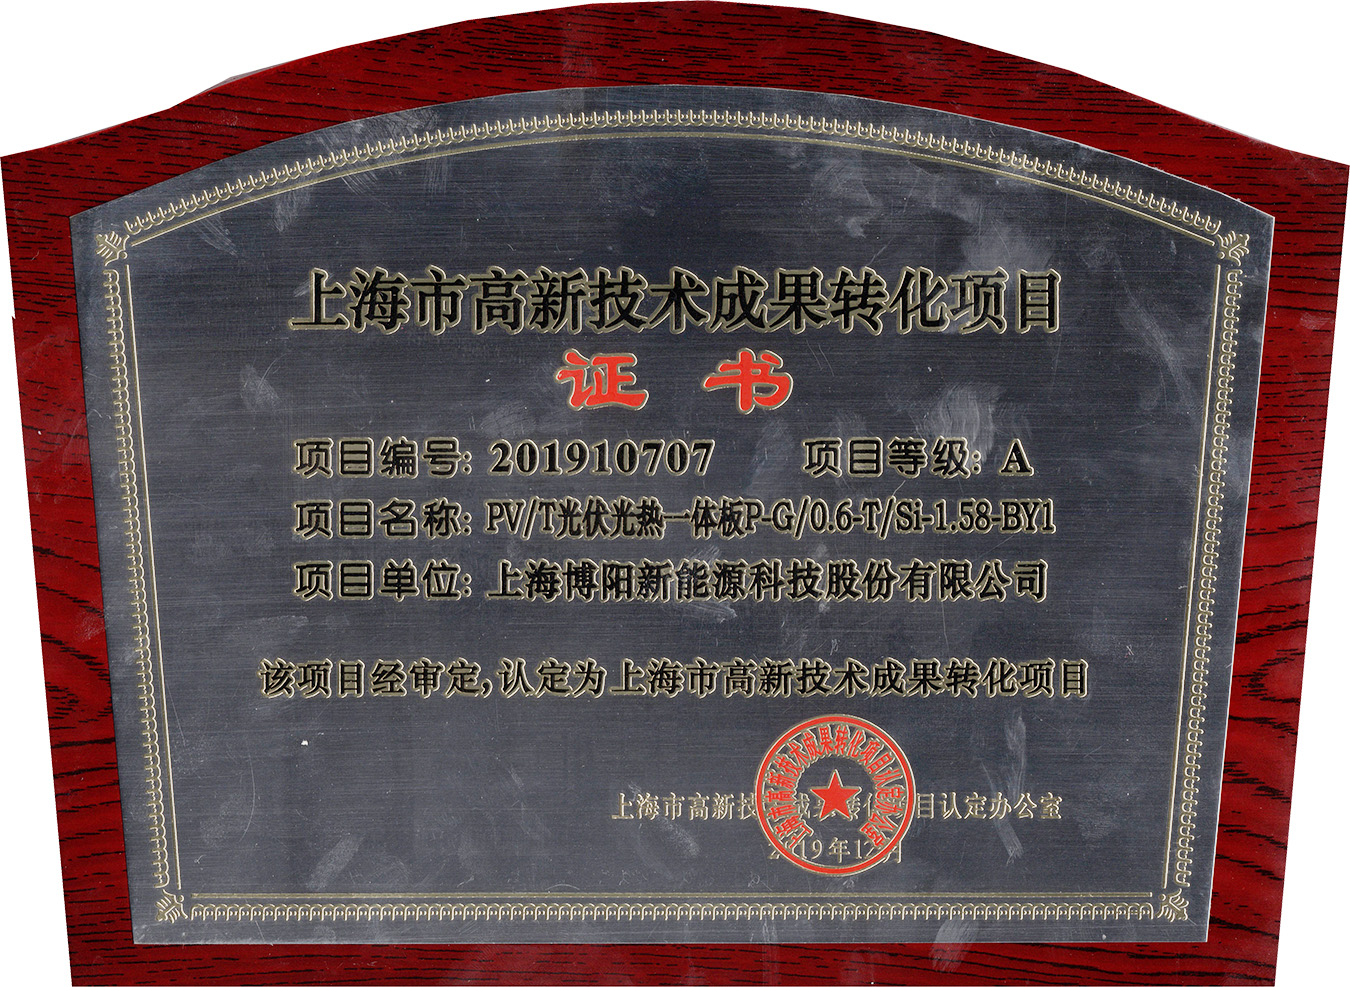 喜讯ǀ博阳新能 “PV/T光伏光热一体板”产品被认定为上海市高新技术成果转化项目